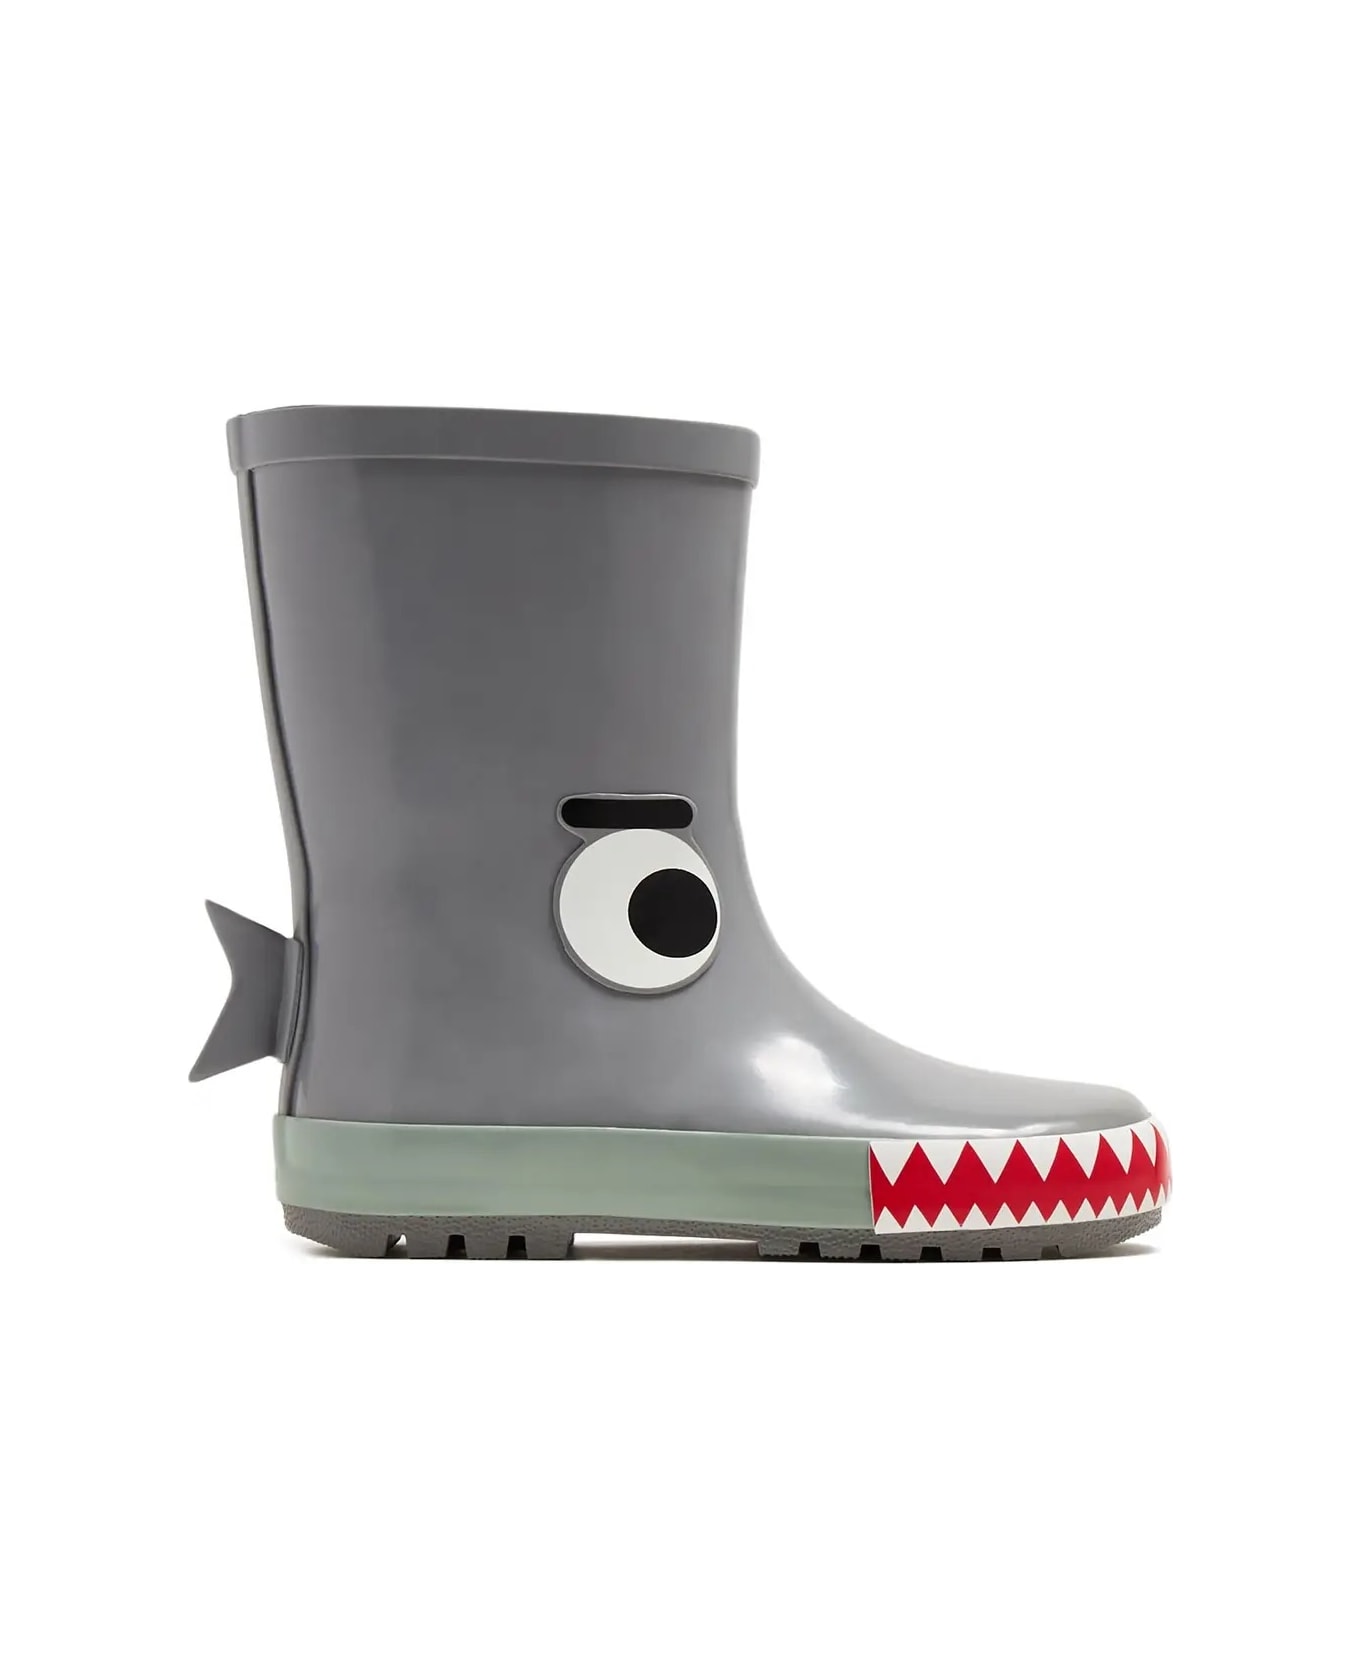 Stella McCartney Kids Shark Rain Boots - Grey